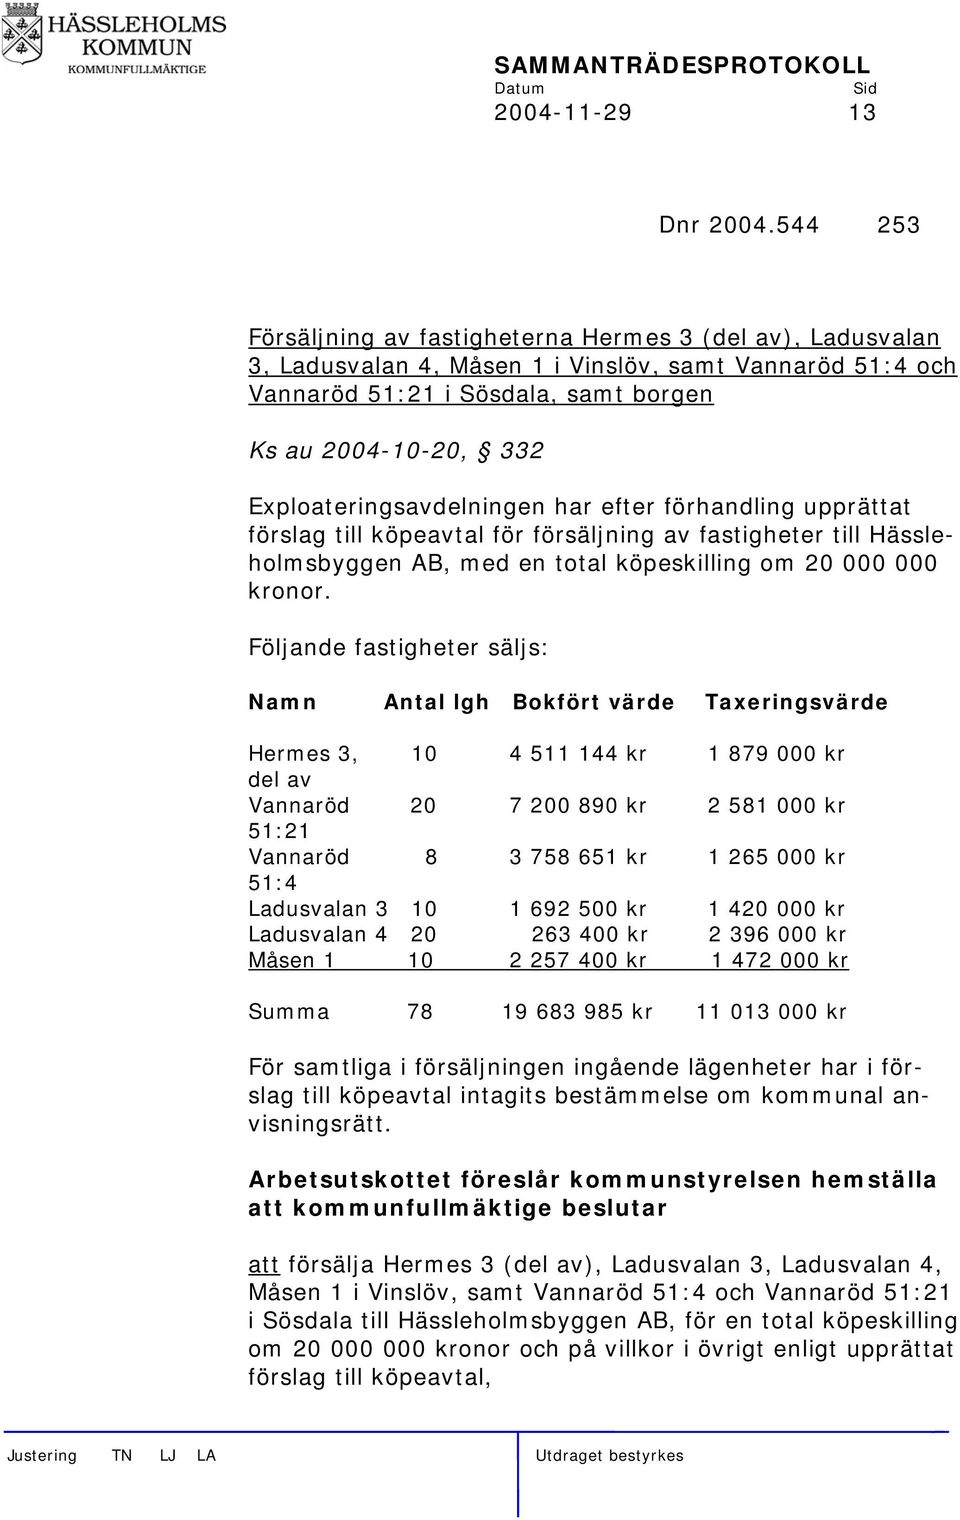 Exploateringsavdelningen har efter förhandling upprättat förslag till köpeavtal för försäljning av fastigheter till Hässleholmsbyggen AB, med en total köpeskilling om 20 000 000 kronor.